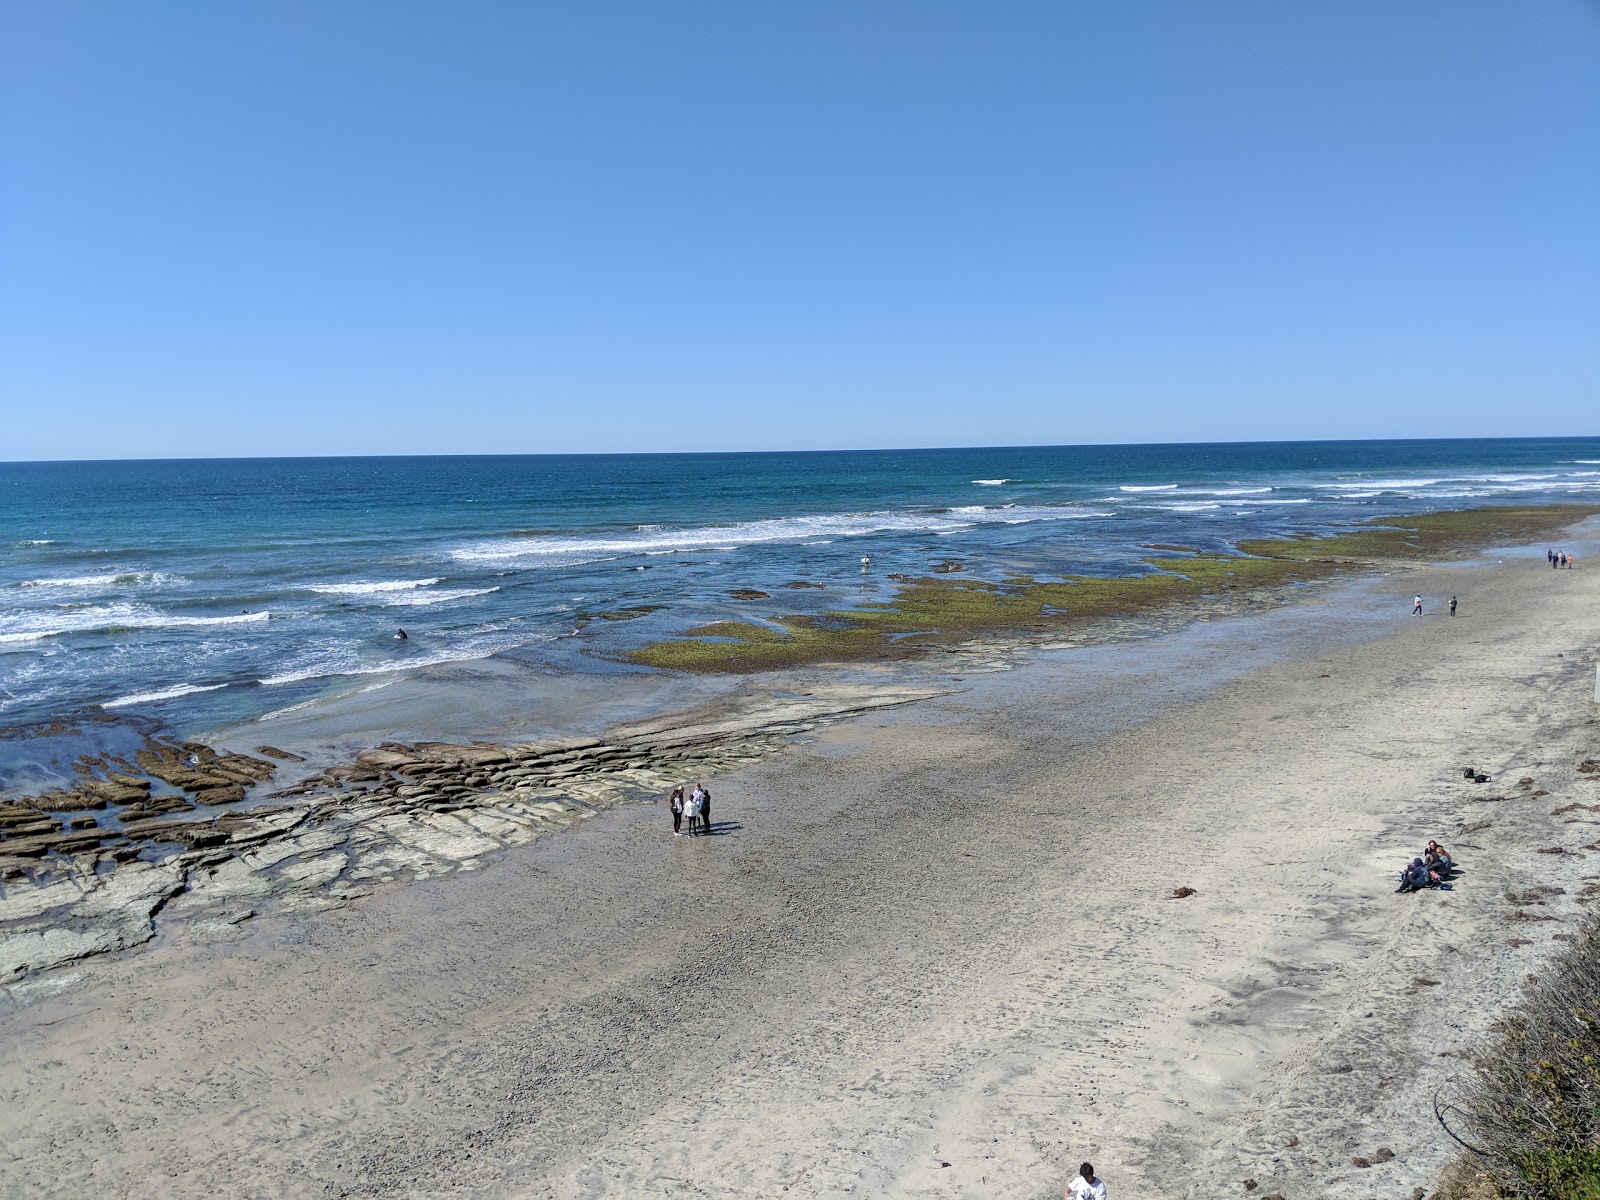 San Elijo beach'in fotoğrafı parlak kum ve kayalar yüzey ile